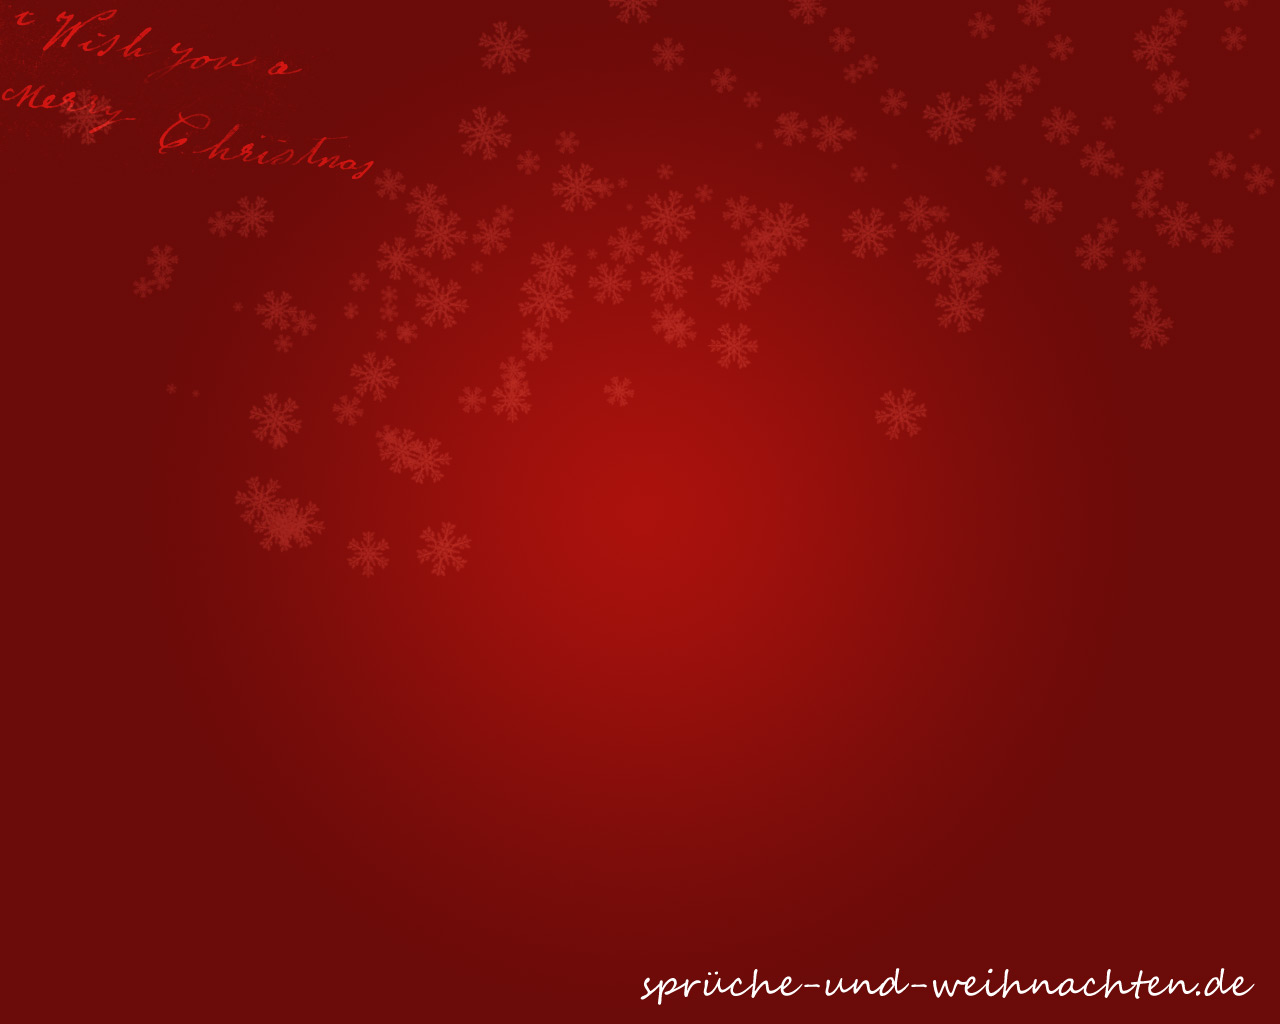 Rotes Weihnachtsplakat mit weißen Sternen im Hintergrund